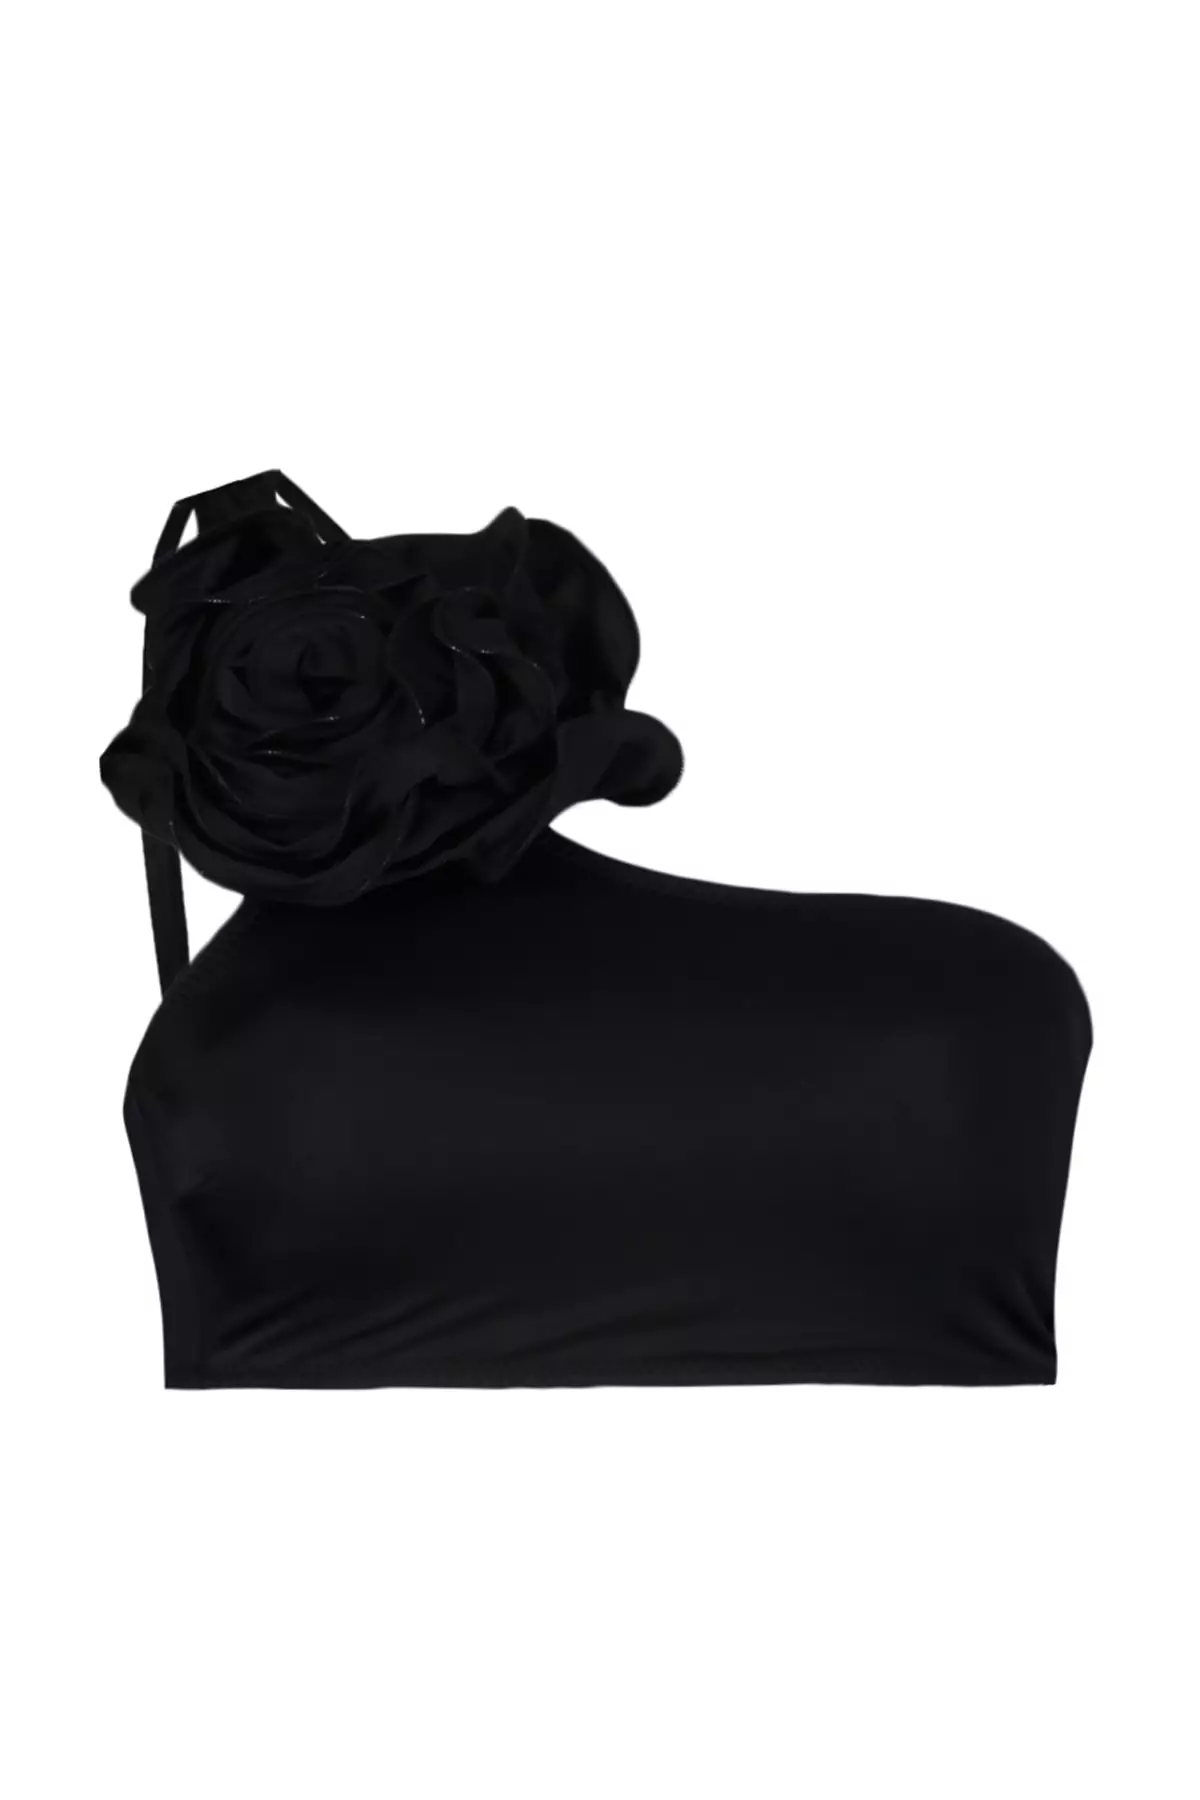 Trendyol Black One-Shoulder Floral Appliques Bikini Top 2024